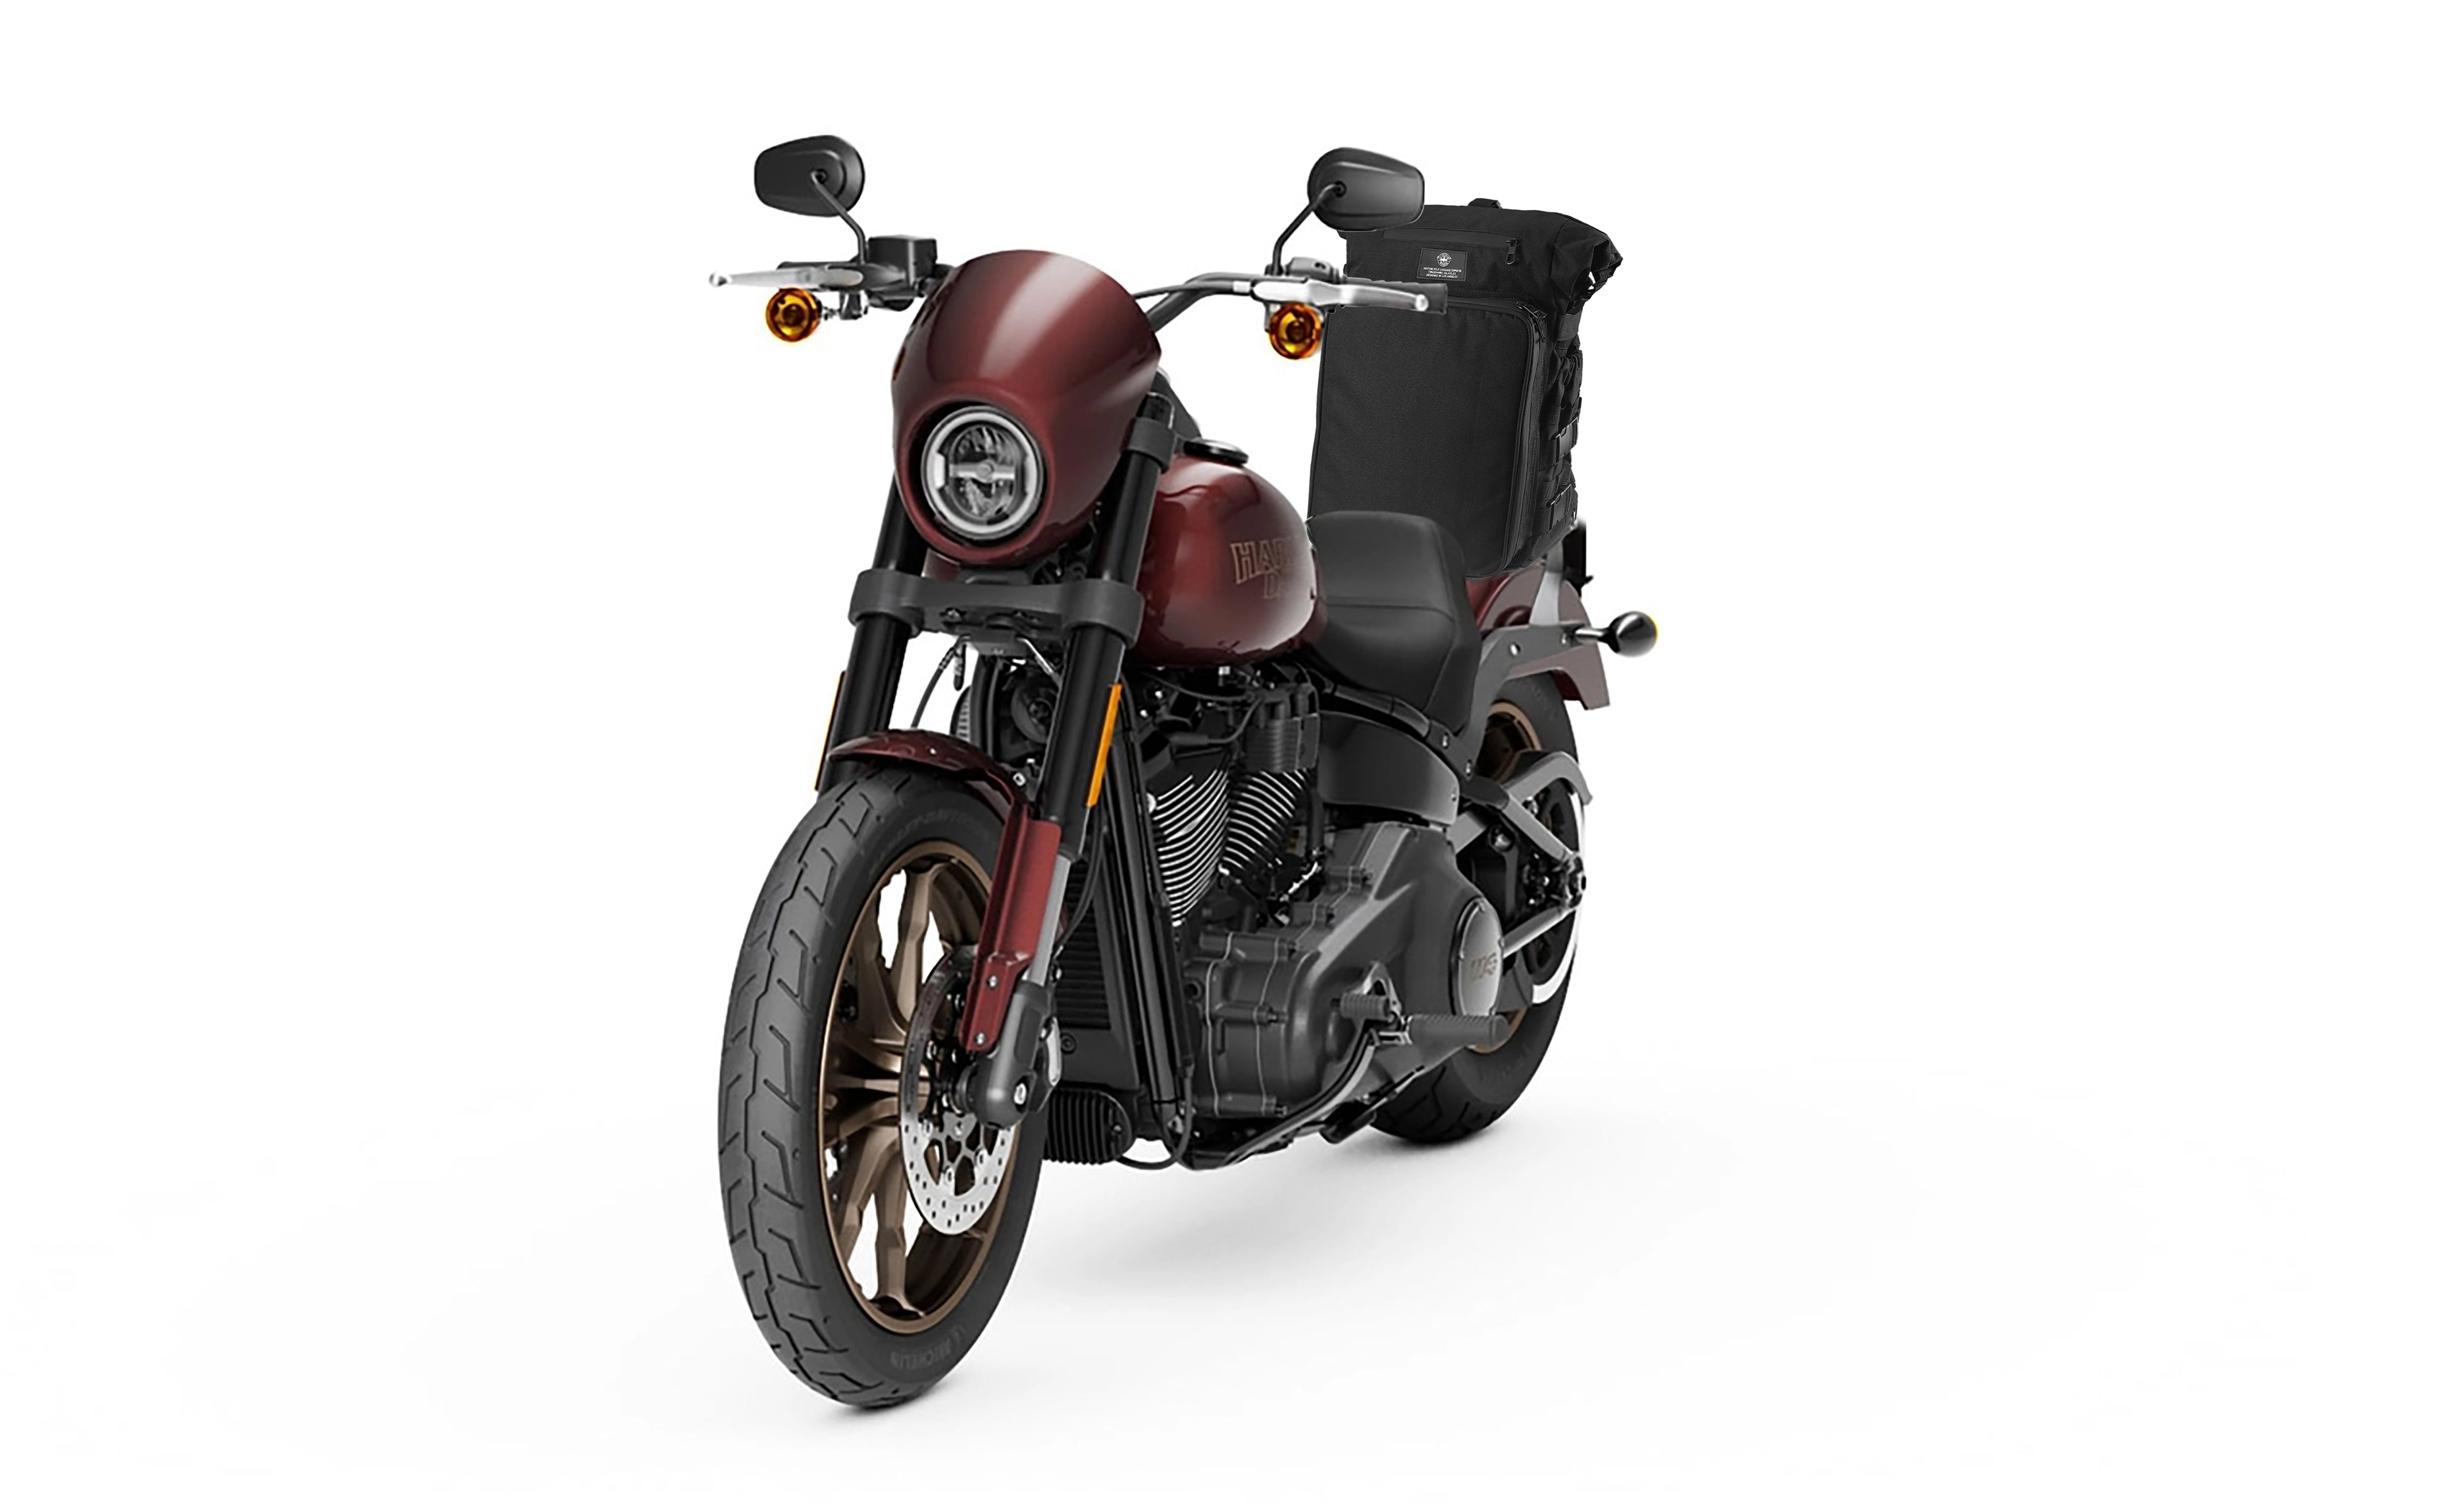 Viking Renegade XL Hyosung Motorcycle Tail Bag Bag on Bike View @expand